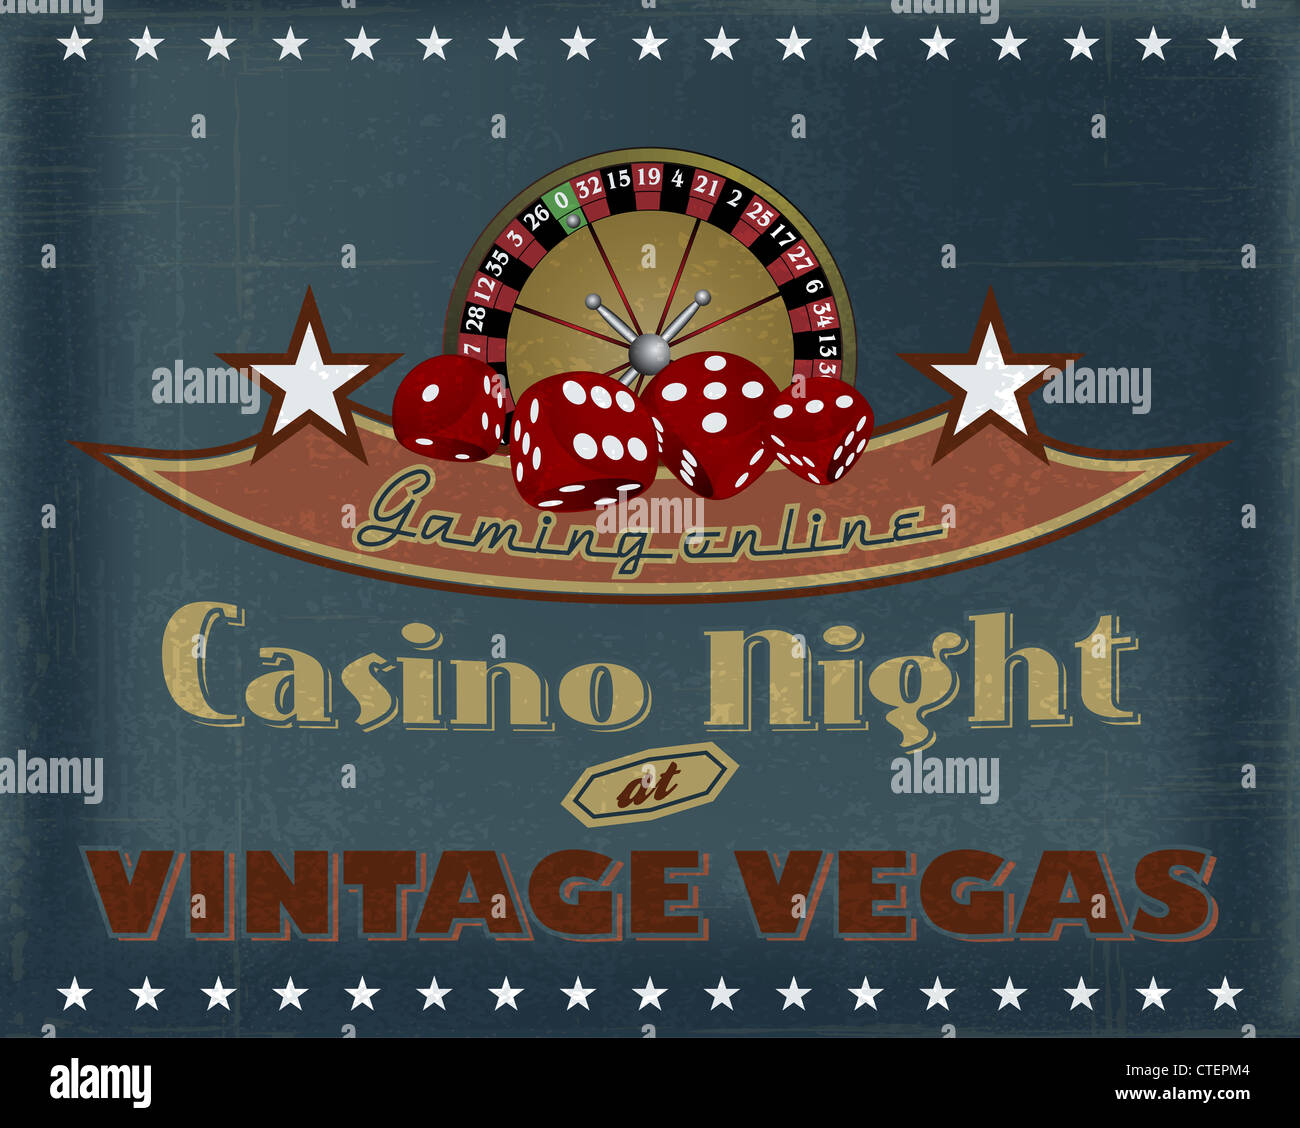 Casino night vintage vegas gaming online poster Foto Stock